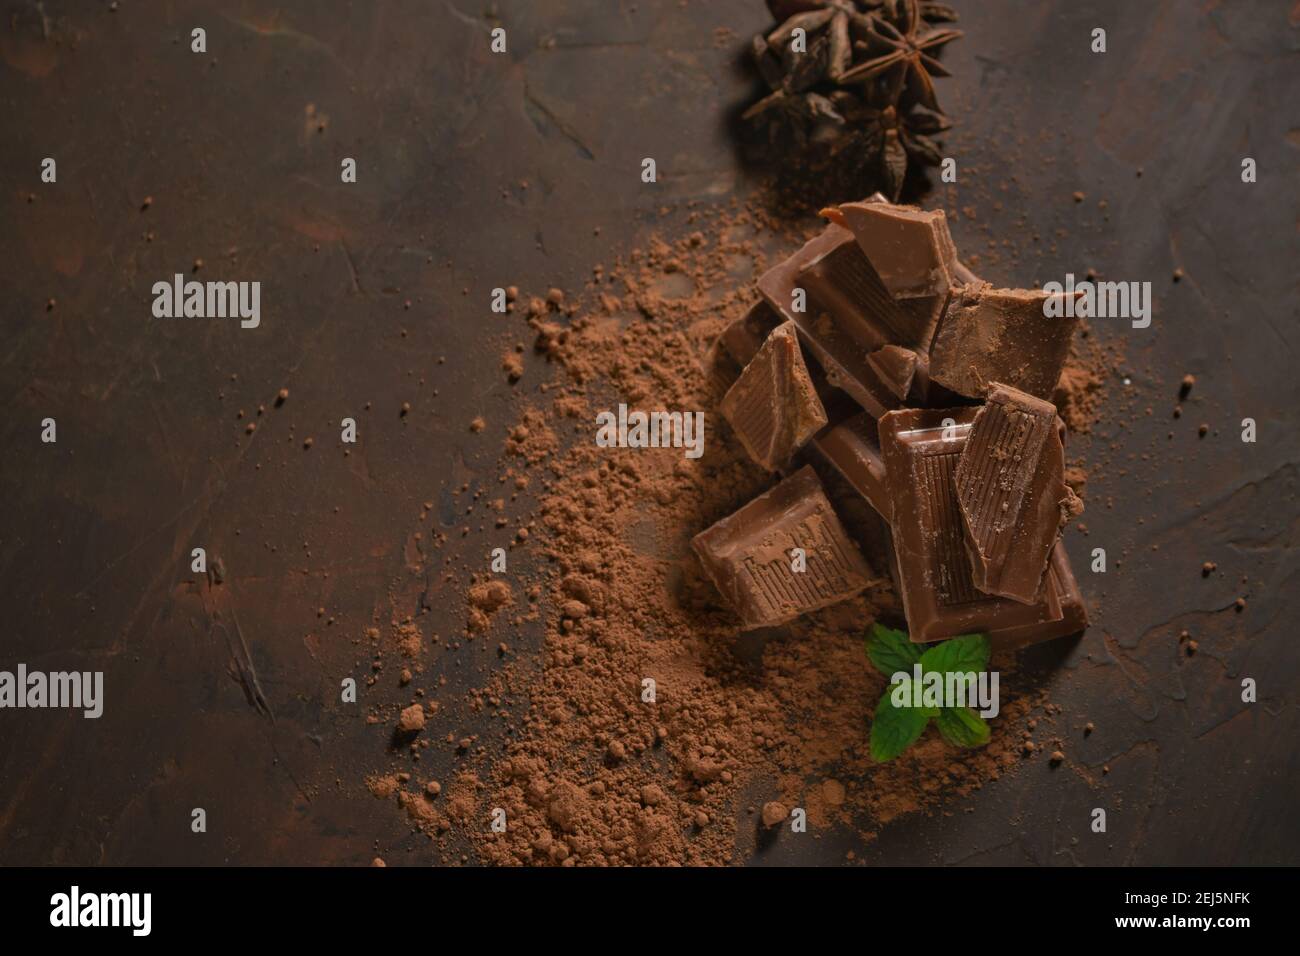 Diversi pezzi di cioccolato fondente e polvere di cacao su una superficie scura. Foglie di menta e semi di anice stellato completano l'immagine. Foto Stock